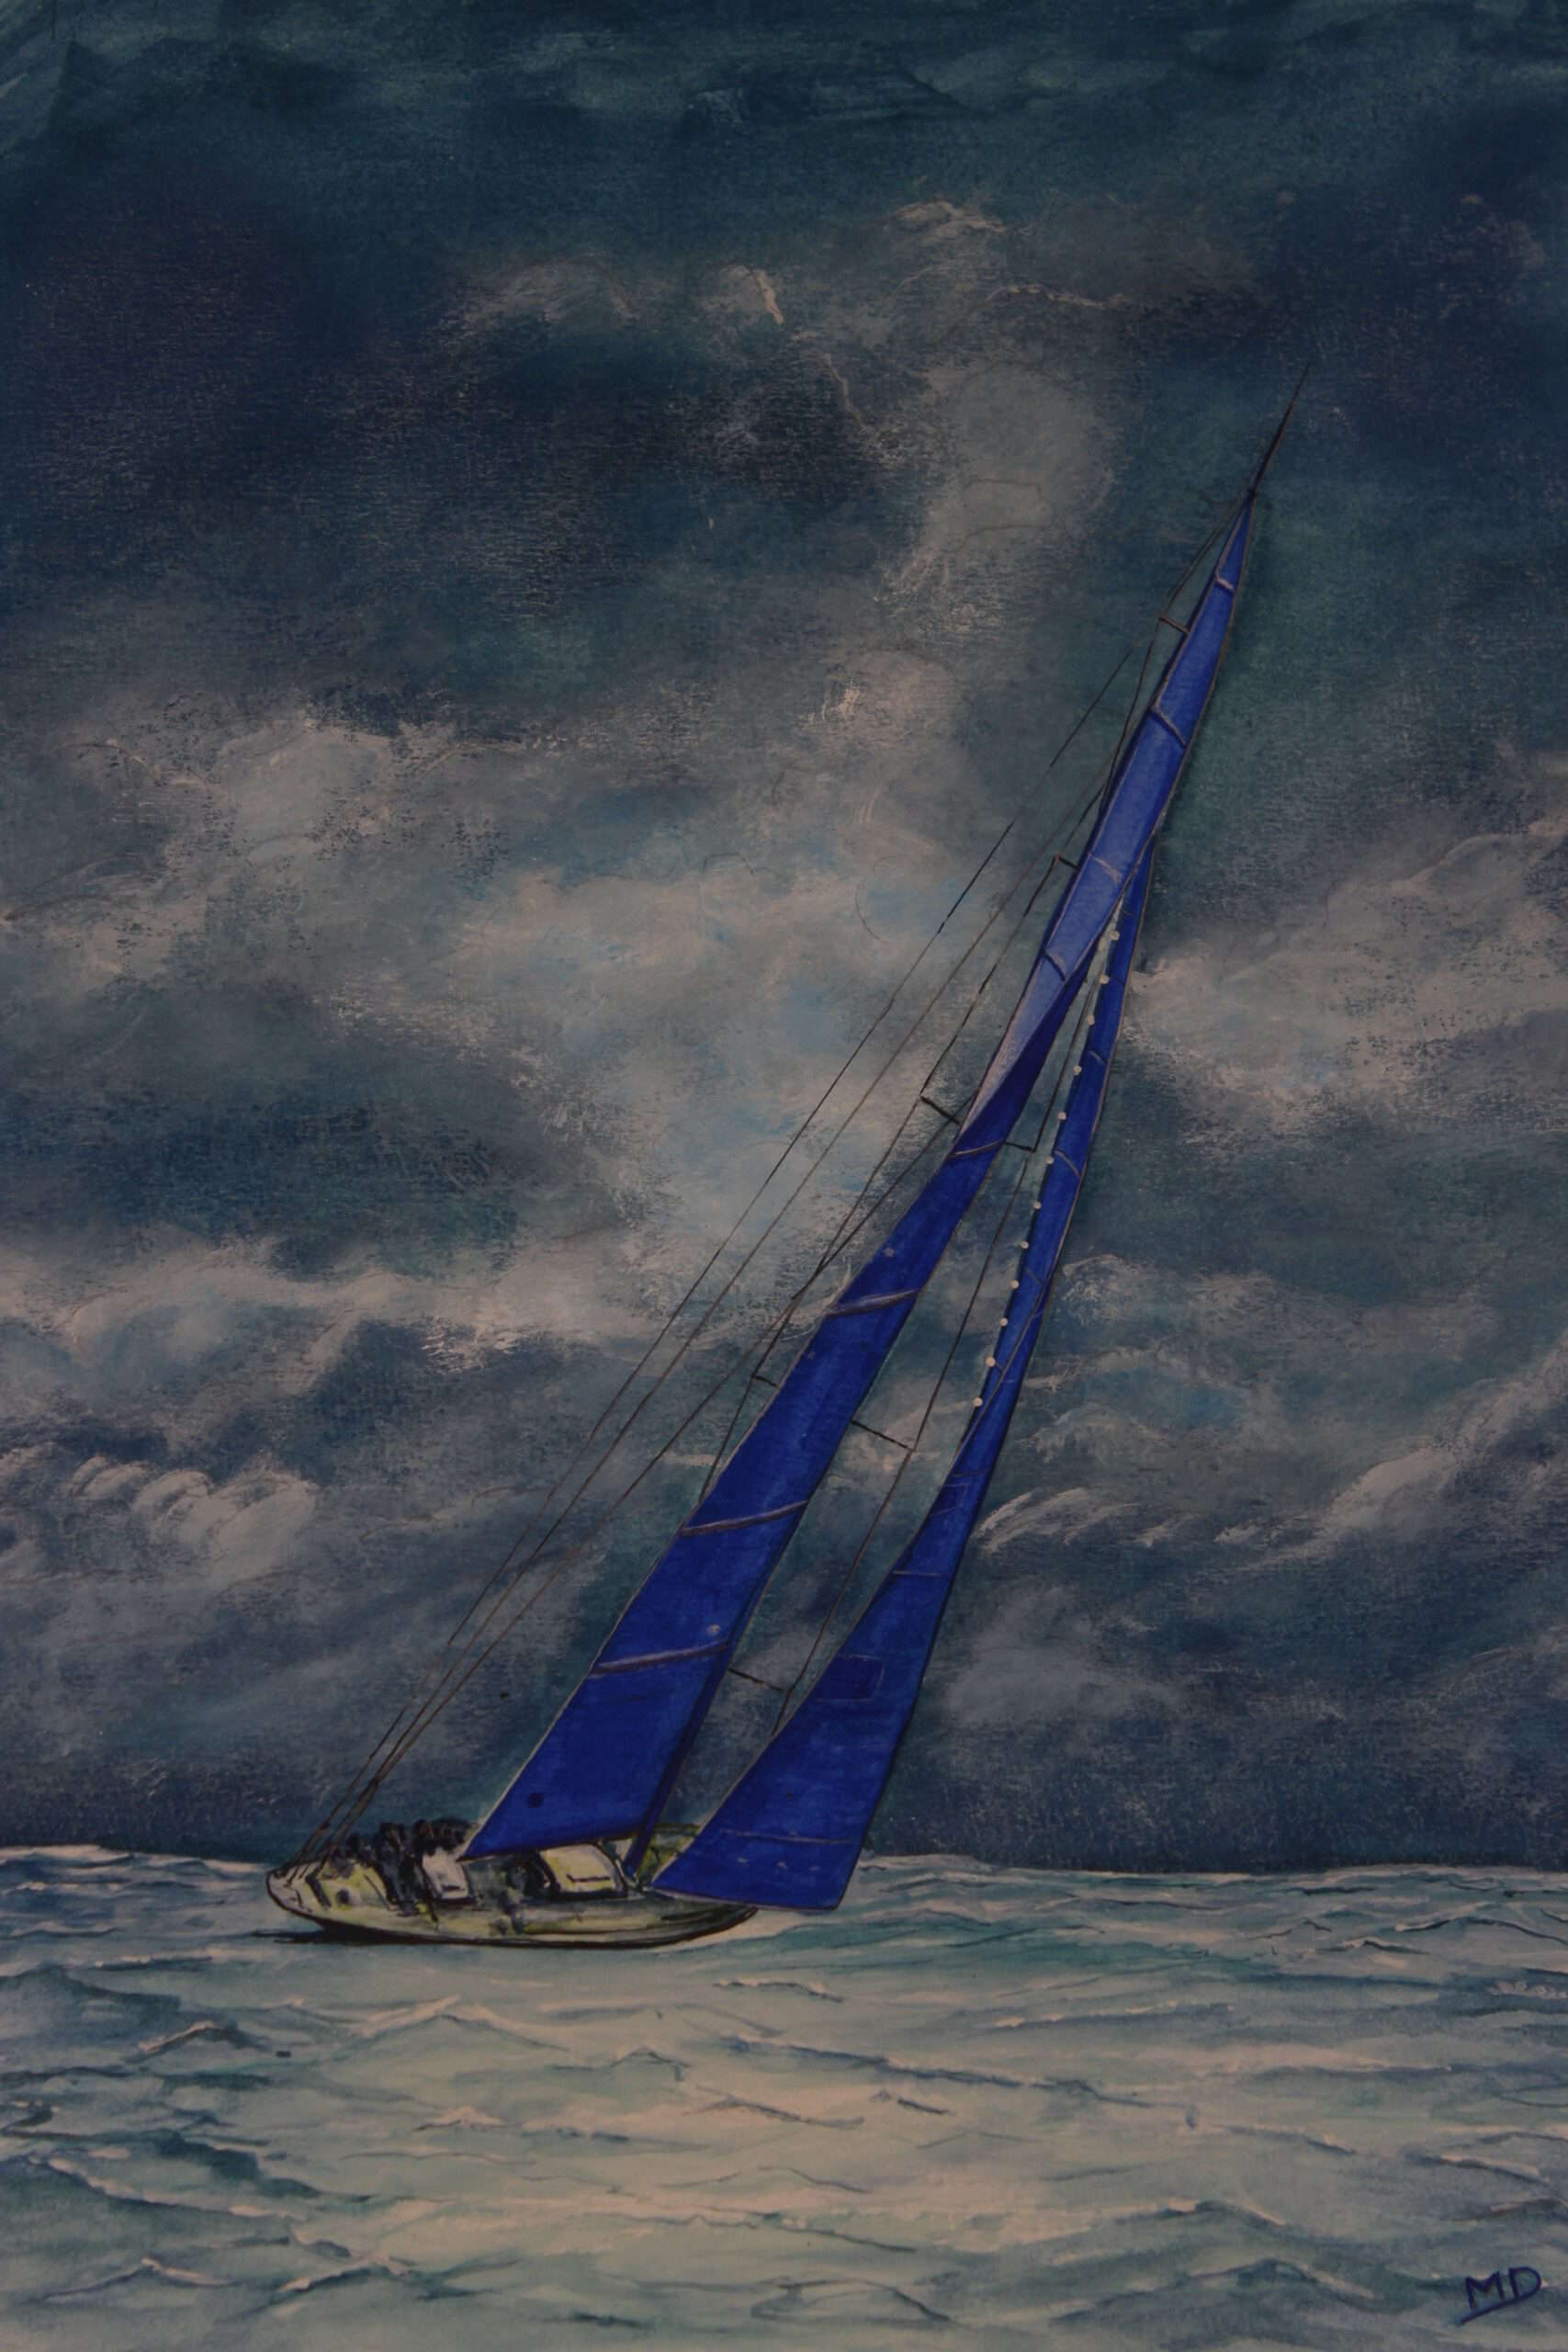 Oeuvre d'art, marine, gouache sur papier A3, david morel artiste, voilier dans la tempête avec des voiles bleus